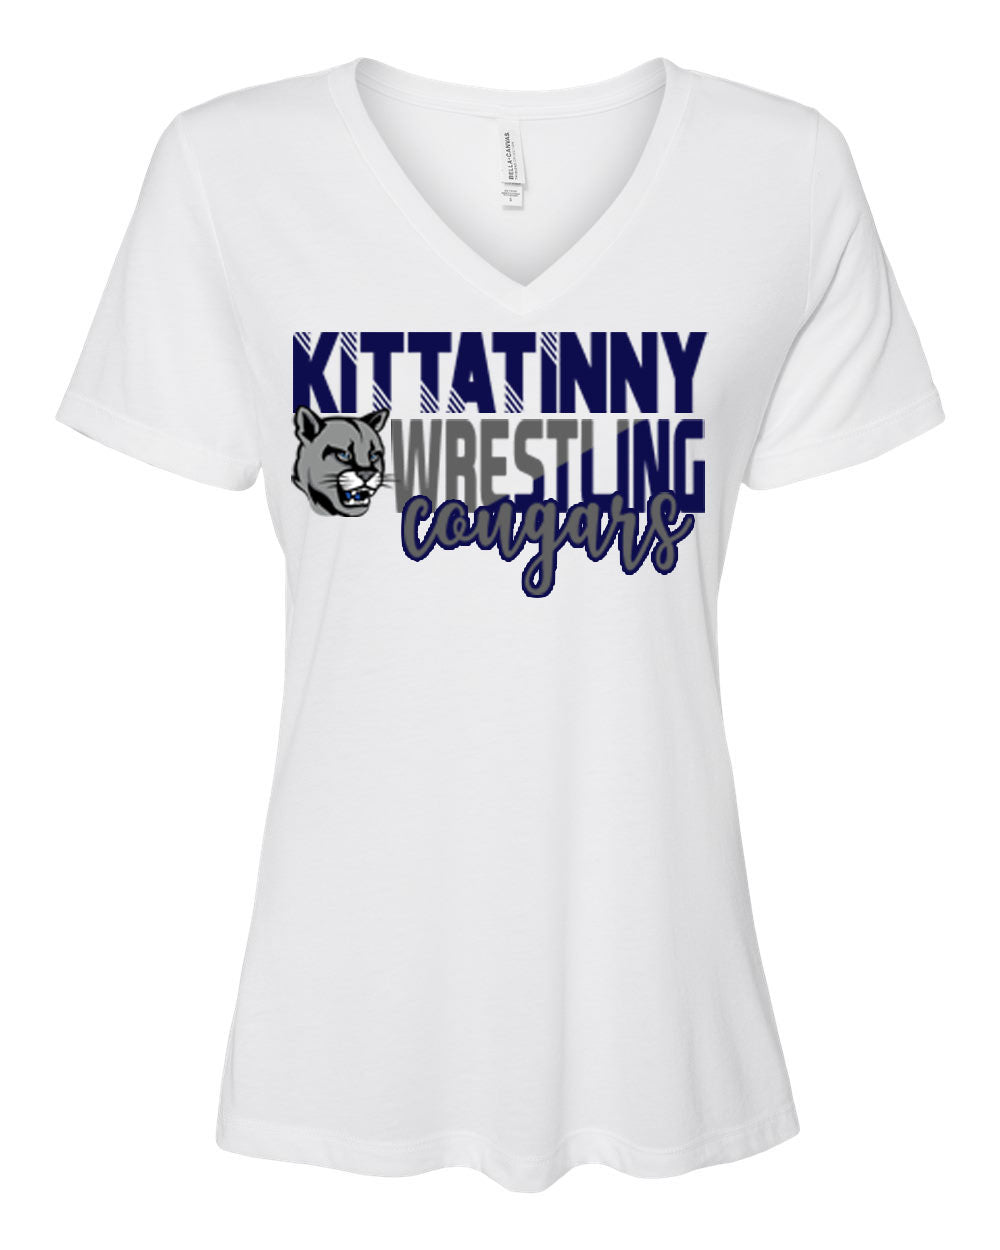 Kittatinny Wresting Design 4 V-neck T-Shirt